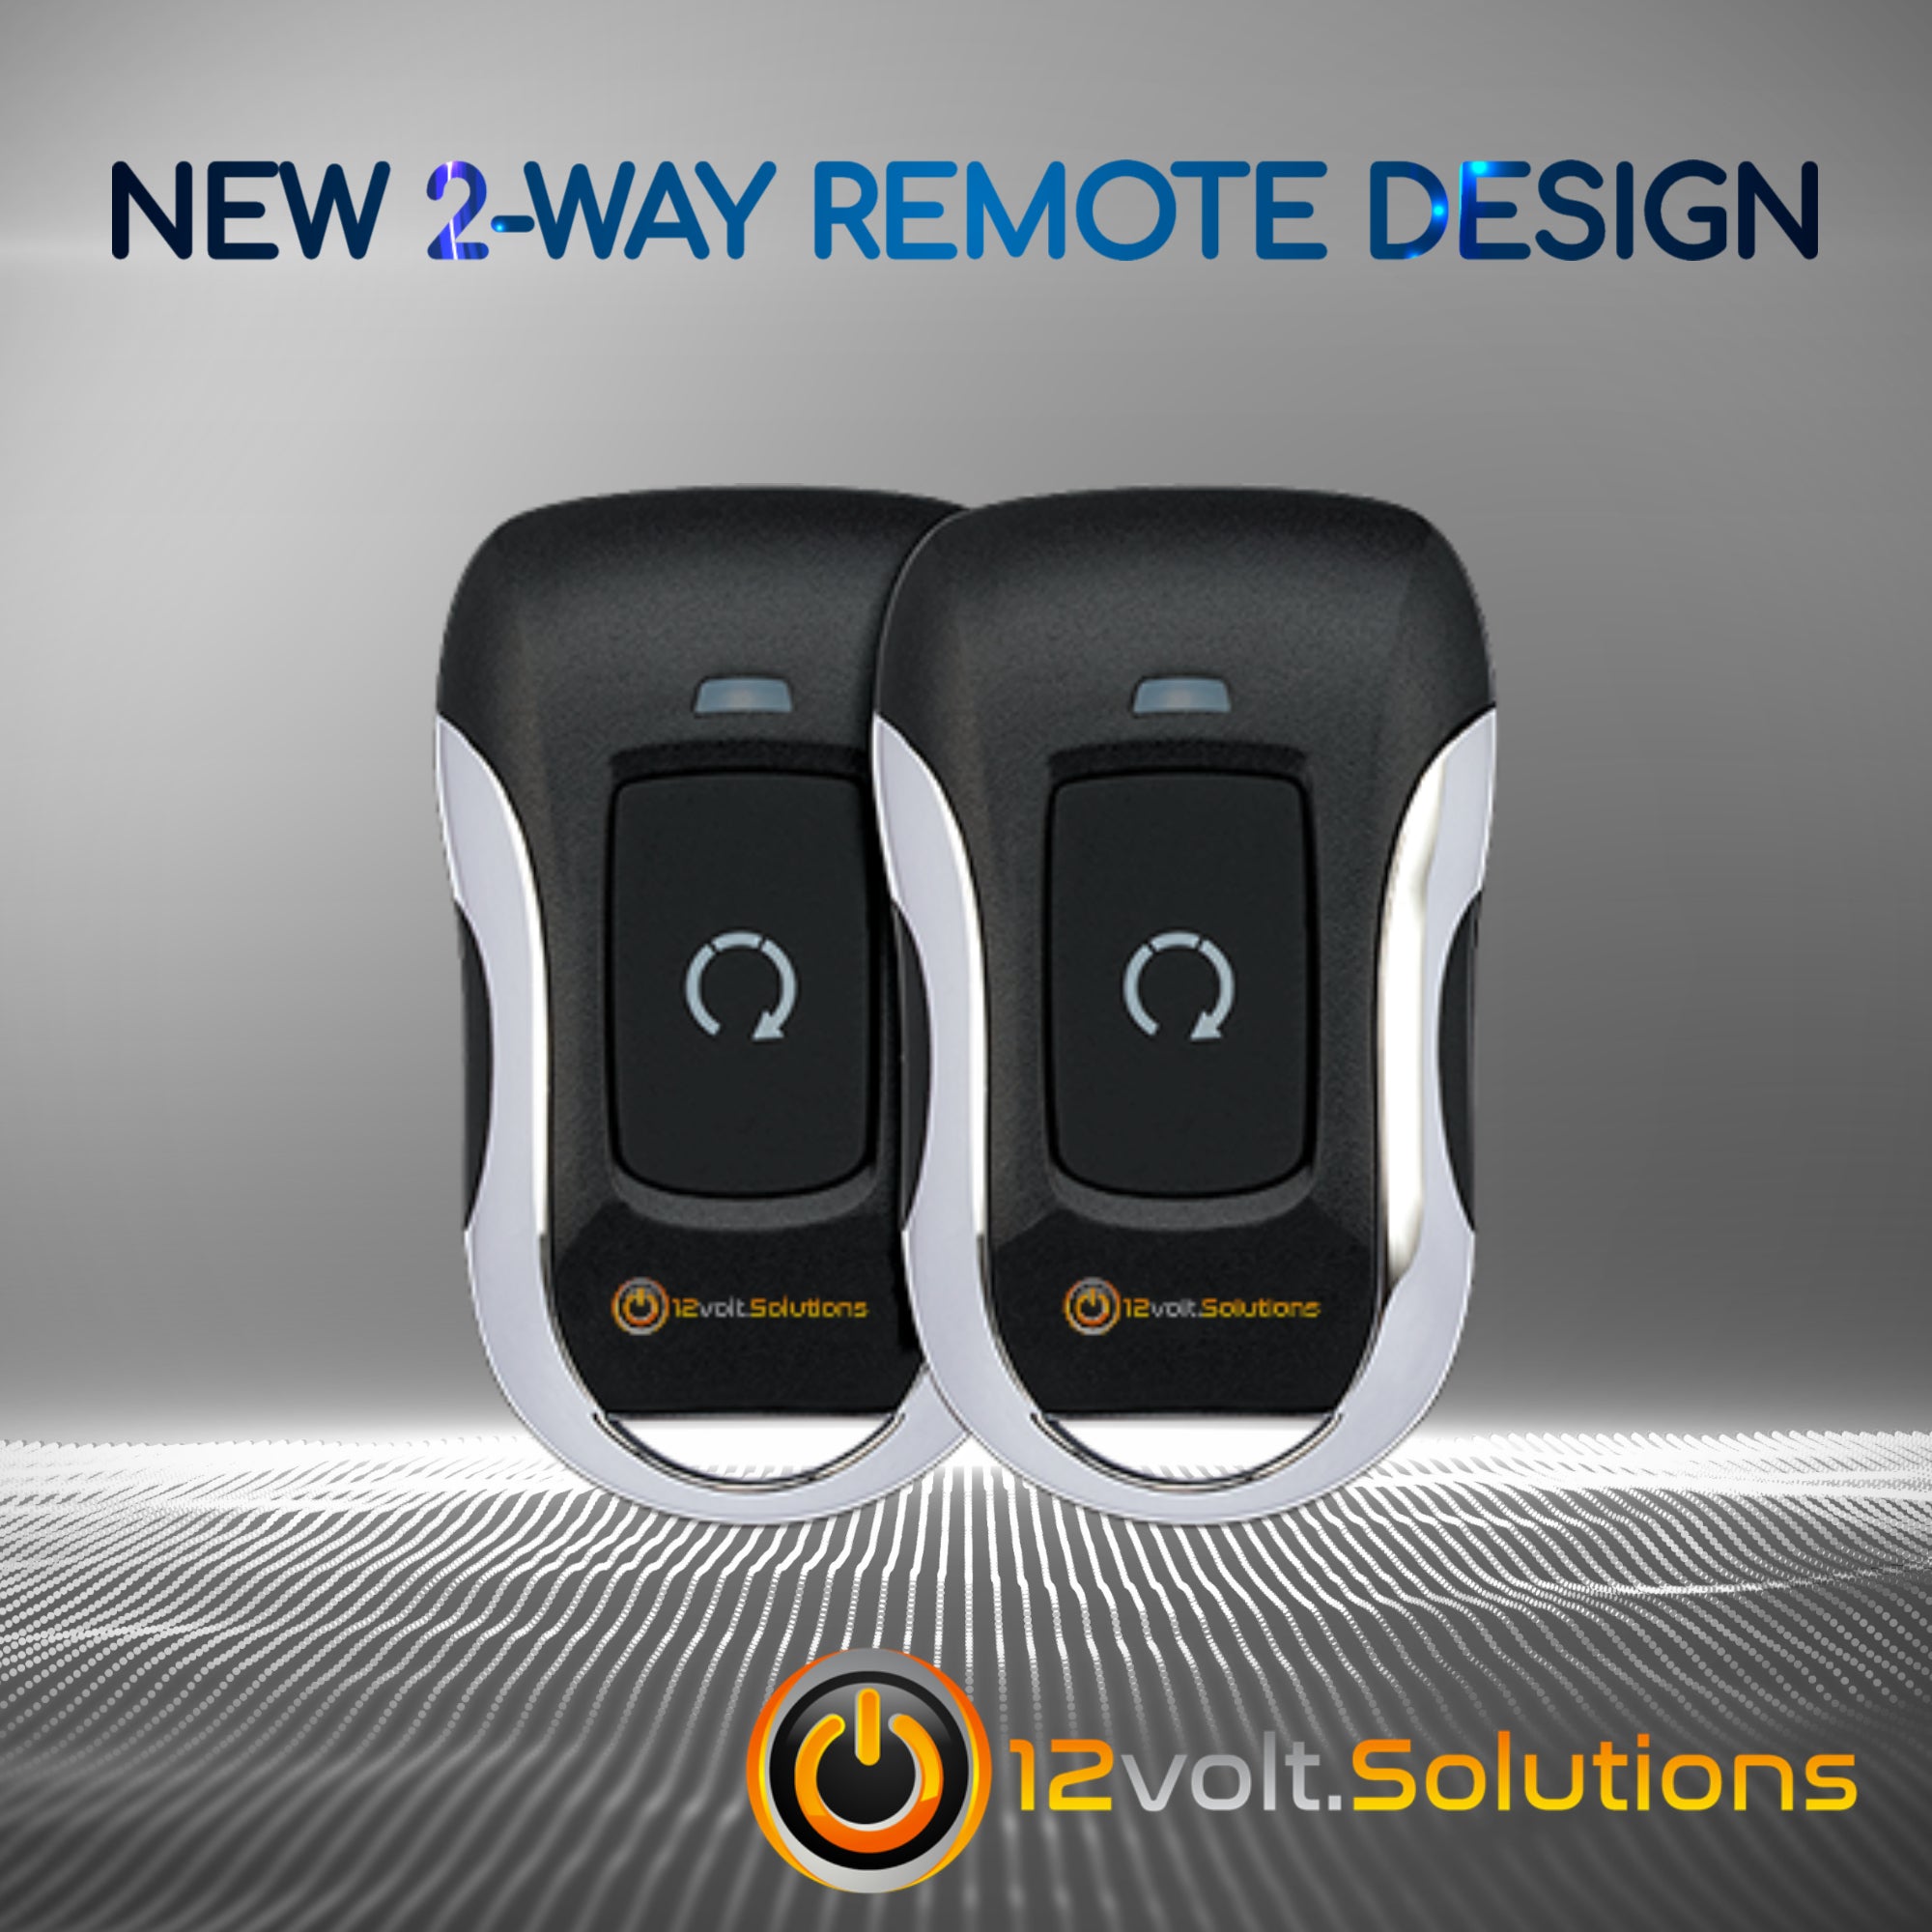 2017-2020 Chevrolet Silverado 1500 Plug & Play Remote Start Kit (Key Start)-12Volt.Solutions